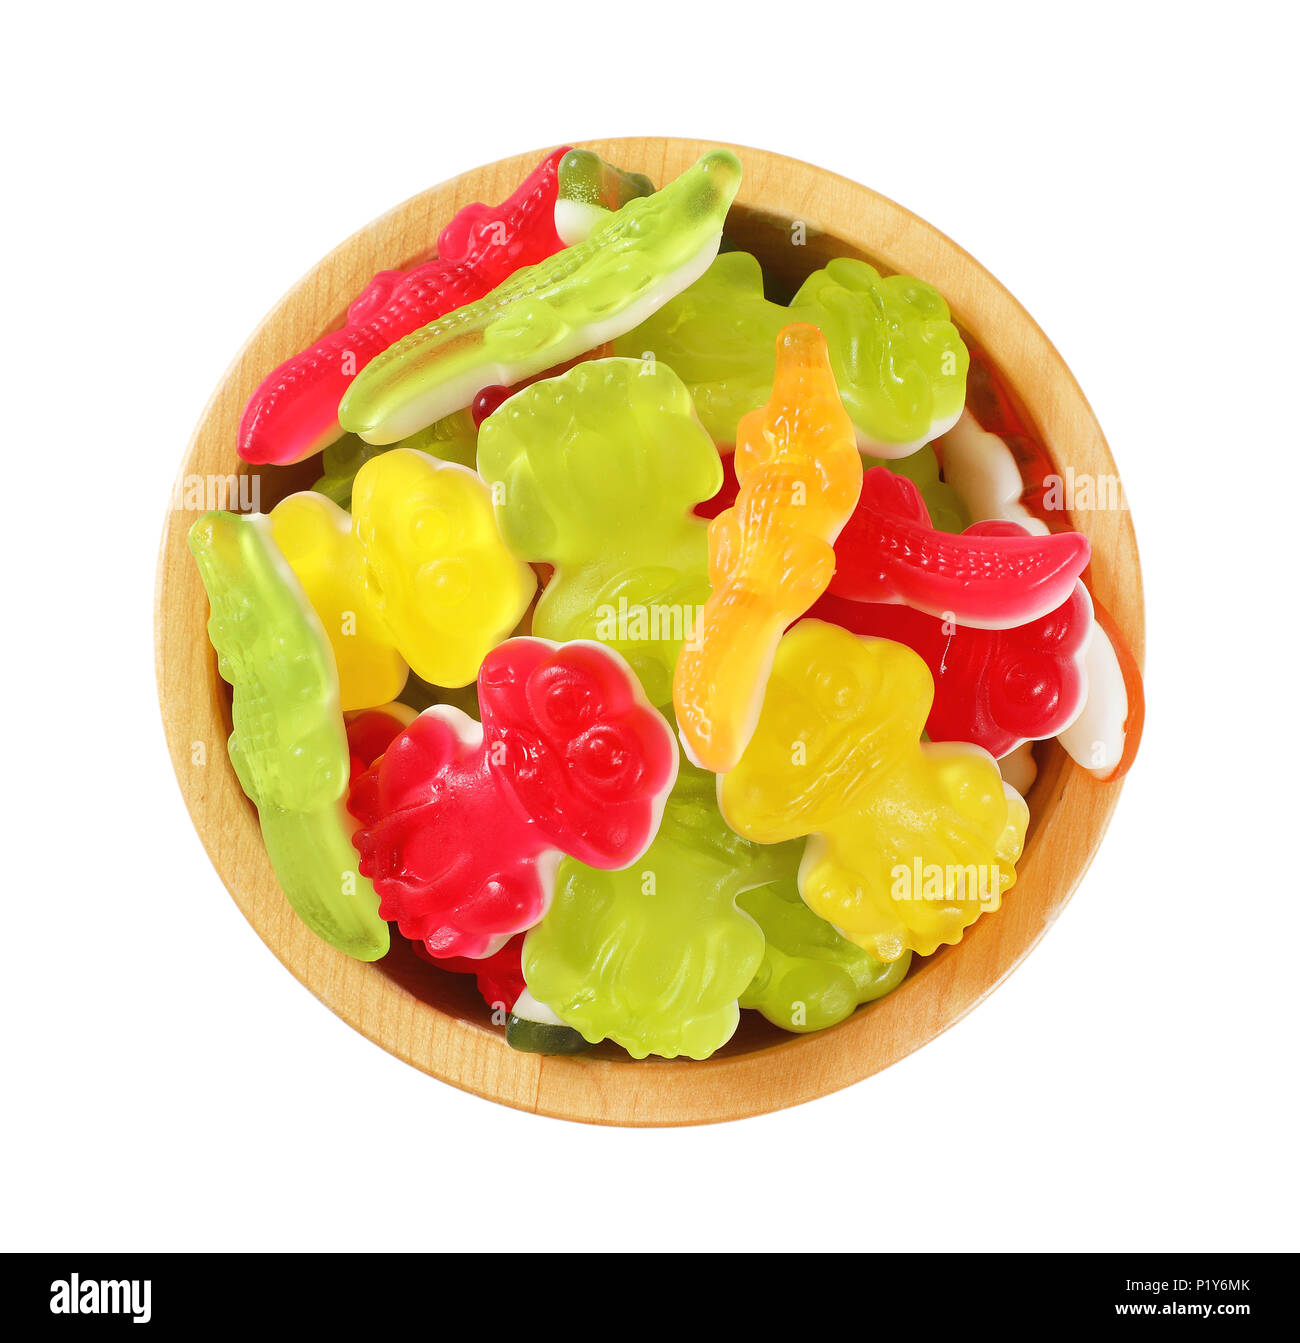 Schüssel mit bunten Gummibärchen Bonbons in der Form von Tieren auf weißem Hintergrund Stockfoto